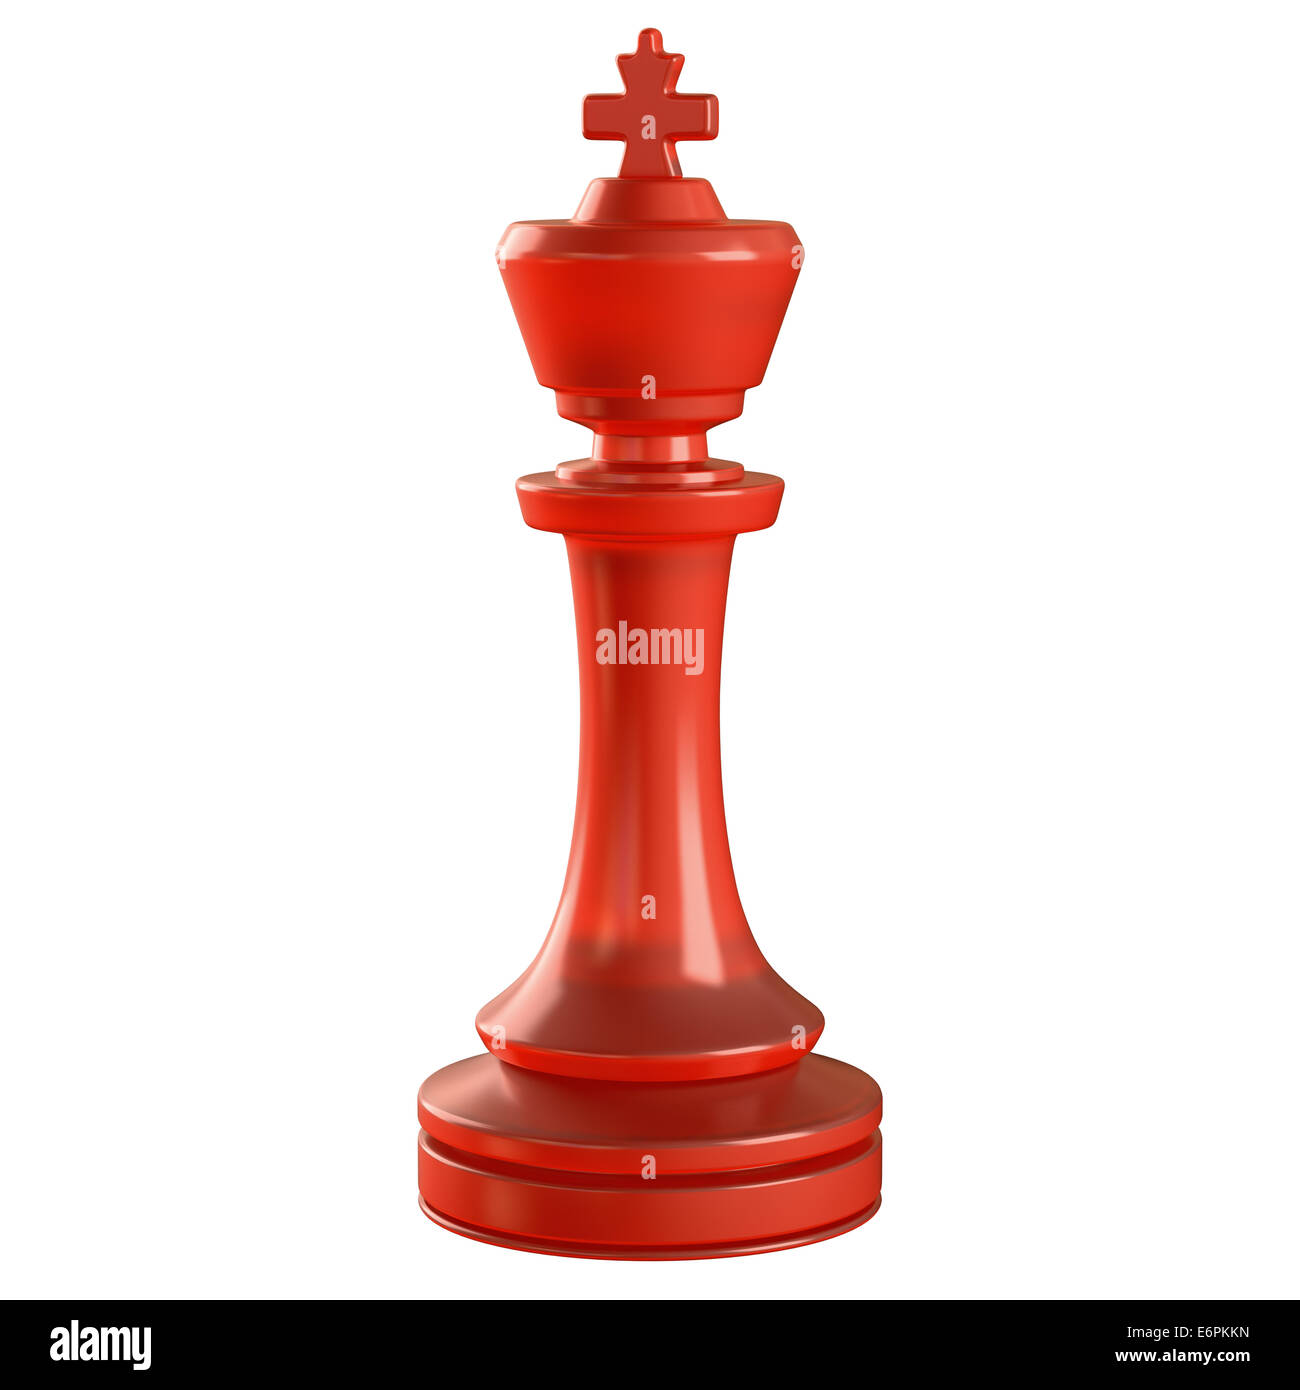 Pieza de ajedrez de cristal rojo aislados. Trazado de recorte incluido. Foto de stock